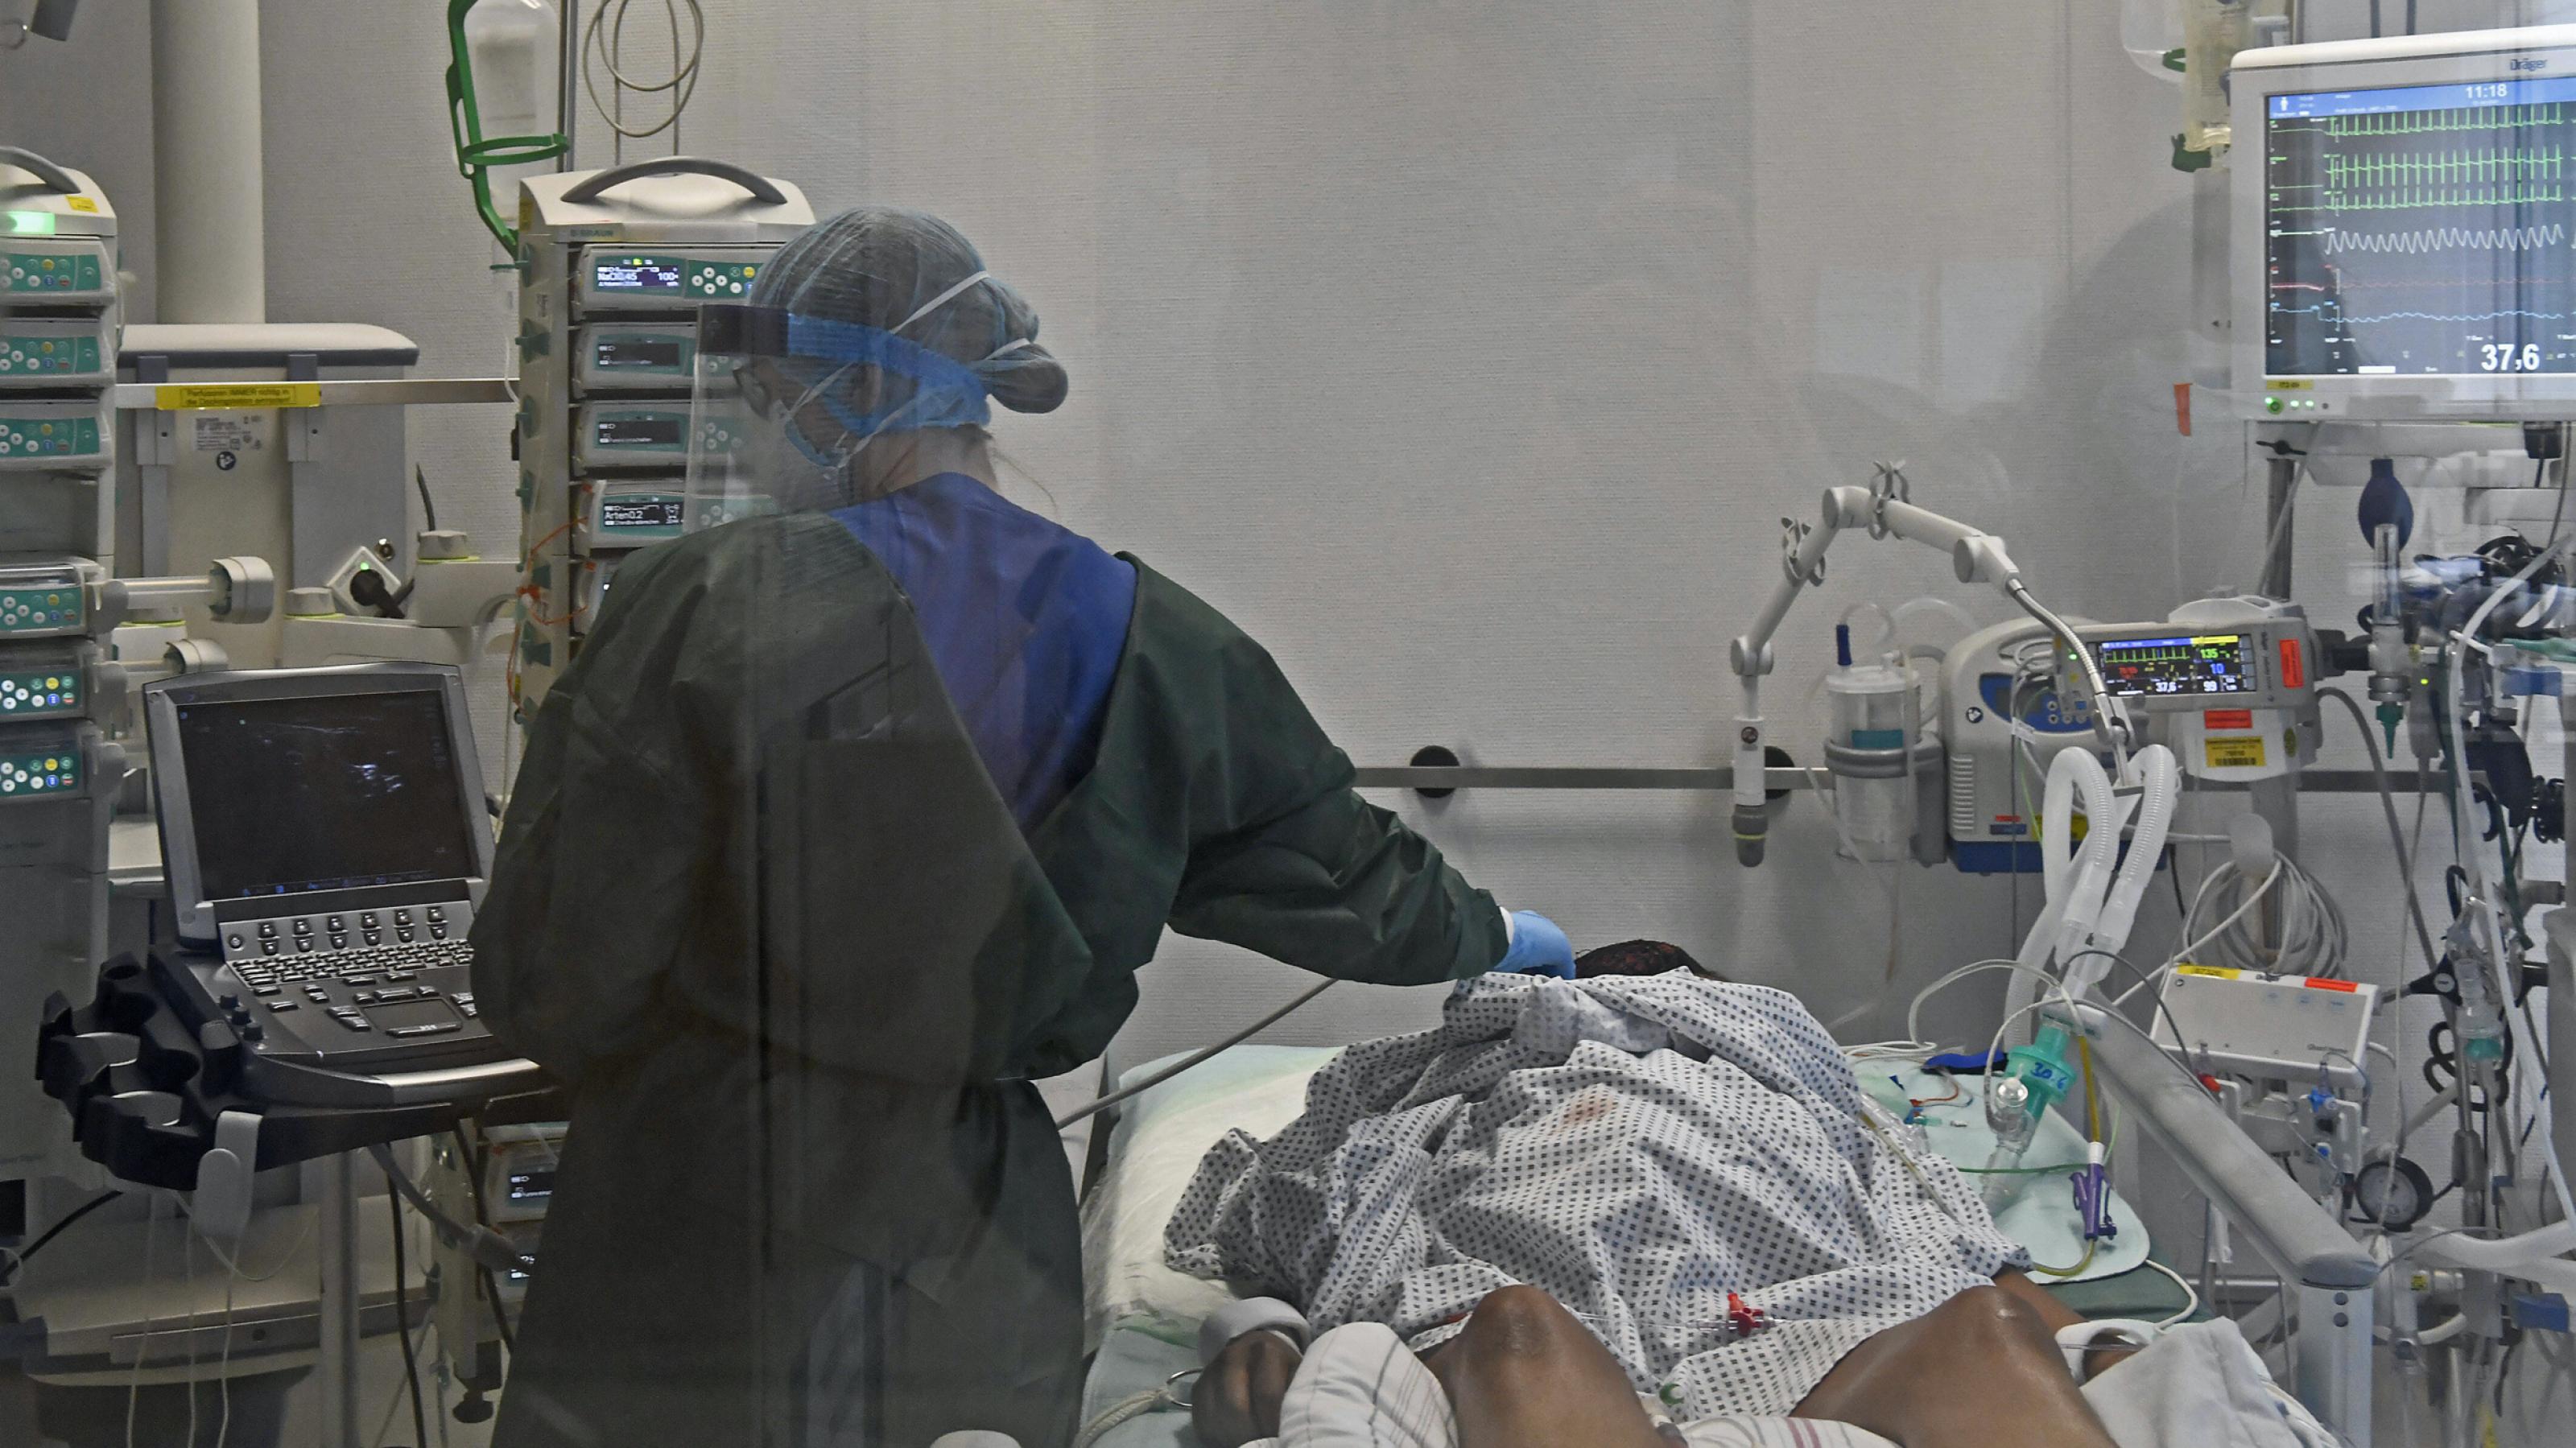 Blick in die Intensivstation der Universitätsklinik Essen mit Covid-19-Beatmungsgerät. Ärzte tragen Maske und behandeln einen Corona-Patienten.